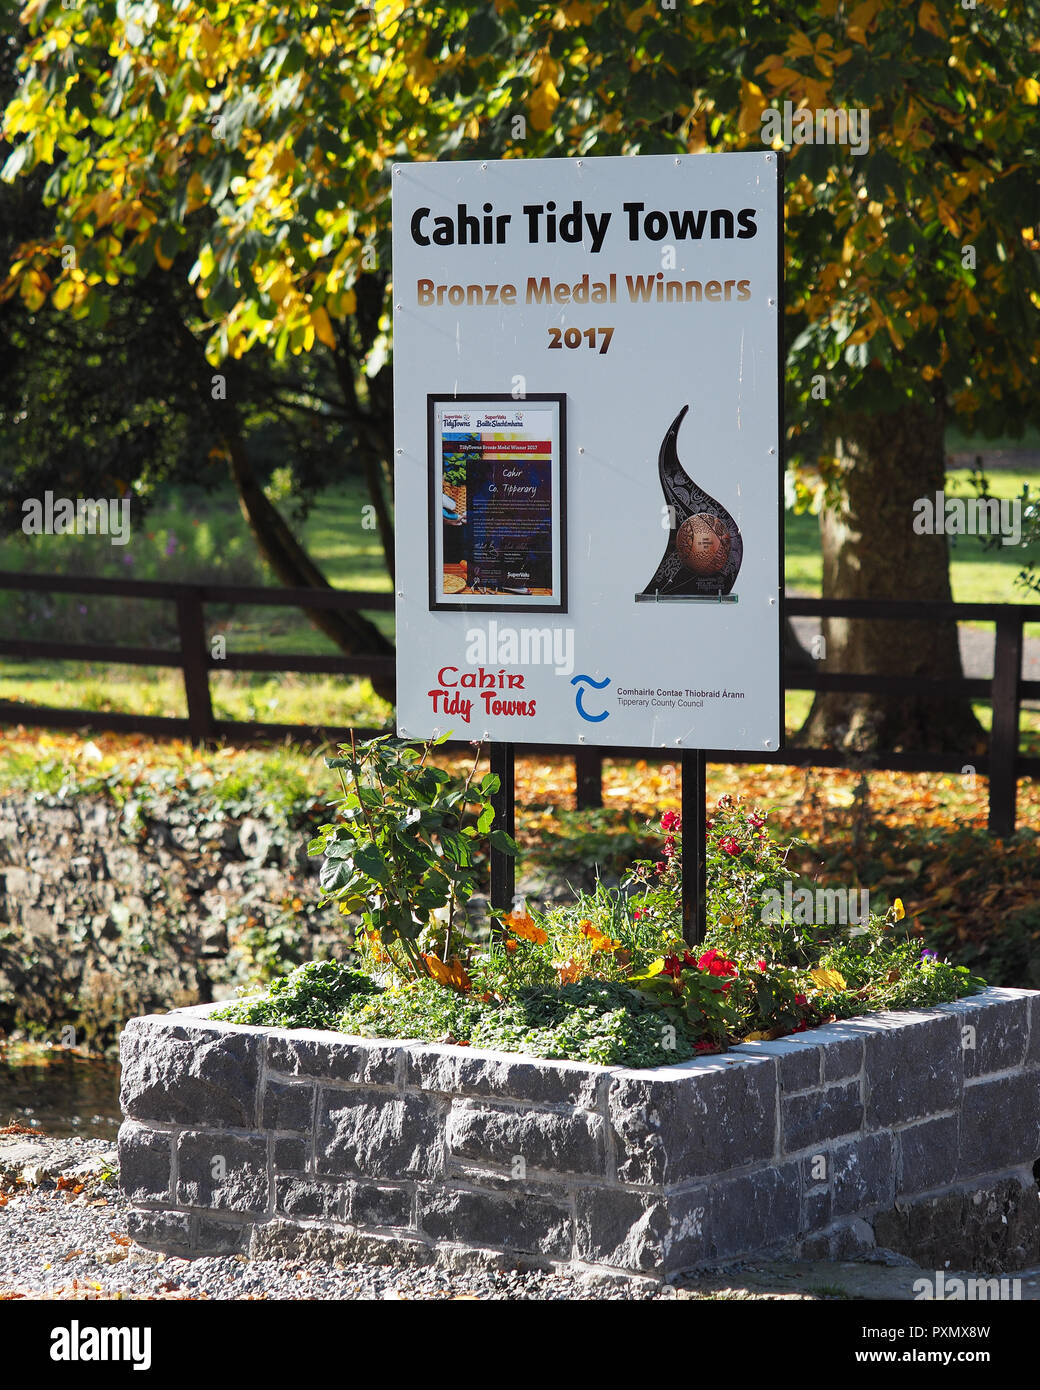 Firmar junto al Castillo de Cahir en Tipperary, Irlanda, mostrando que la ciudad Cahir fue ganador de una medalla de bronce en el concurso de ciudades ordenado 2017. Cahir, Tipperary, Foto de stock